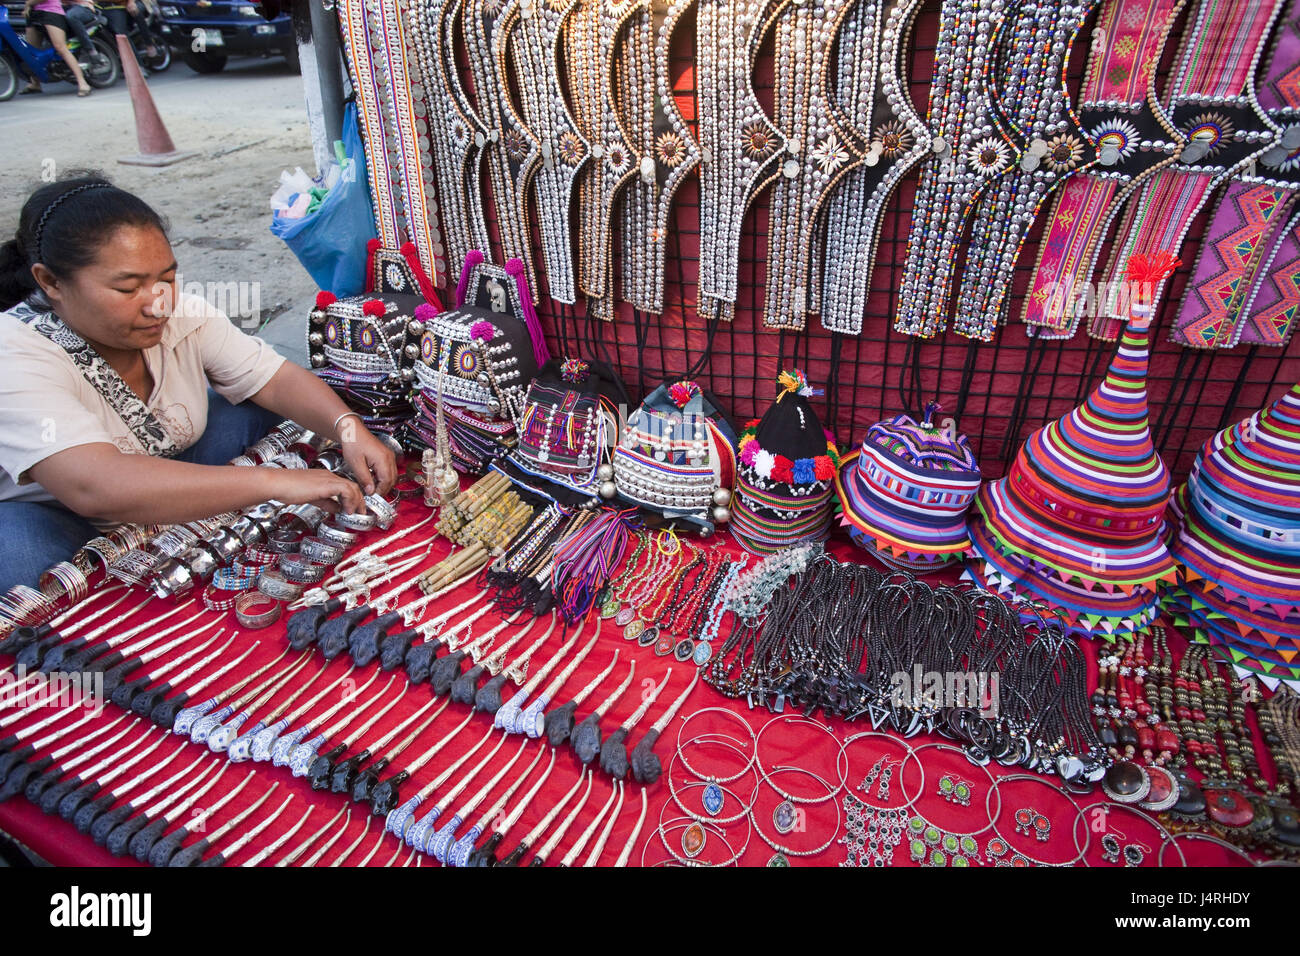 Thailandia Chiang maggio, street market, negozi di souvenir, tribù di montagna artigianato, donna bangle, array, nessun modello di rilascio, Foto Stock